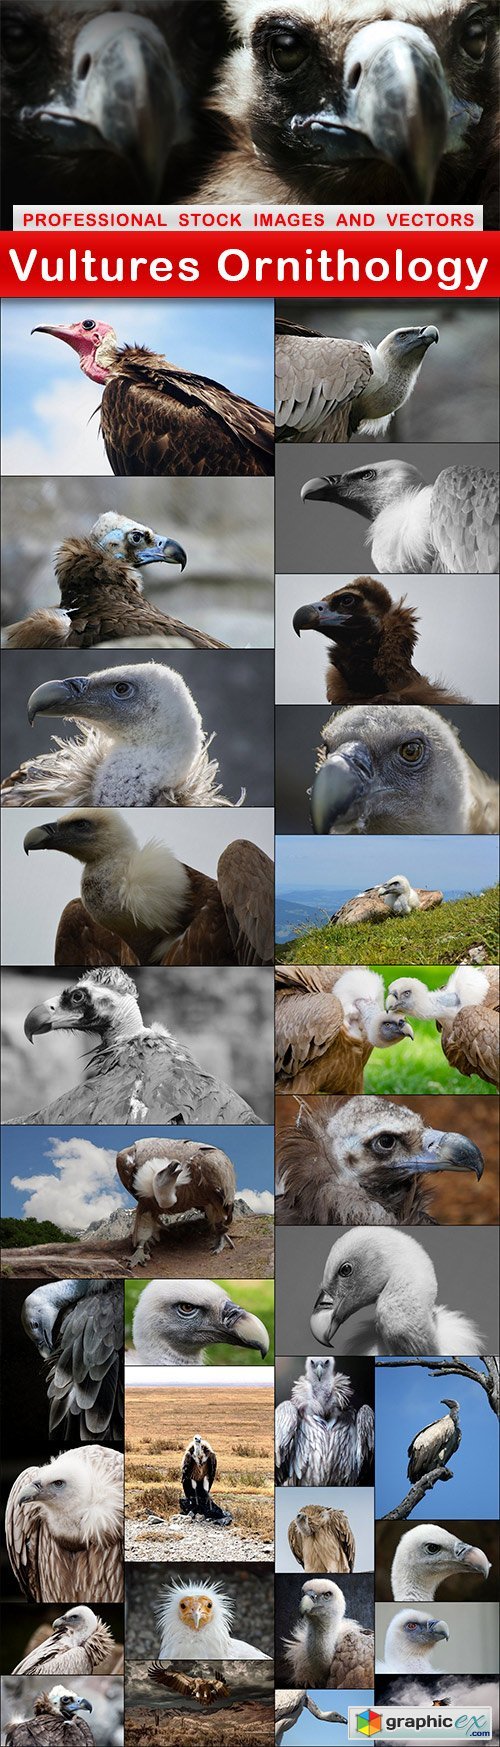 Vultures Ornithology - 31 UHQ JPEG